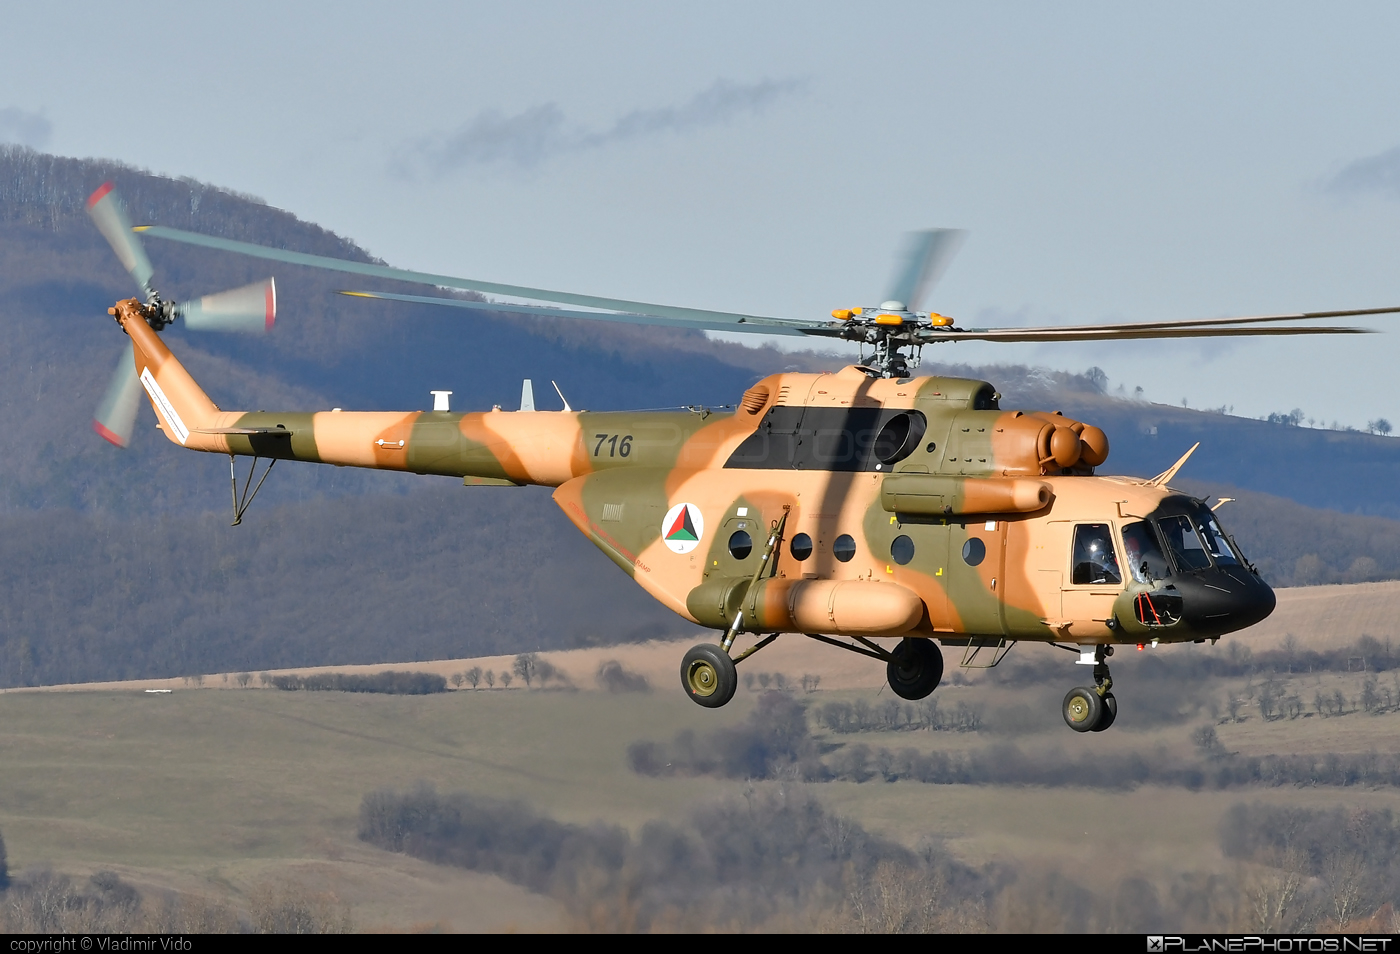 Mil Mi-17V-5 - 716 operated by Afghan Air Force #afghanairforce #mi17 #mi17v5 #mil #mil17 #milhelicopters